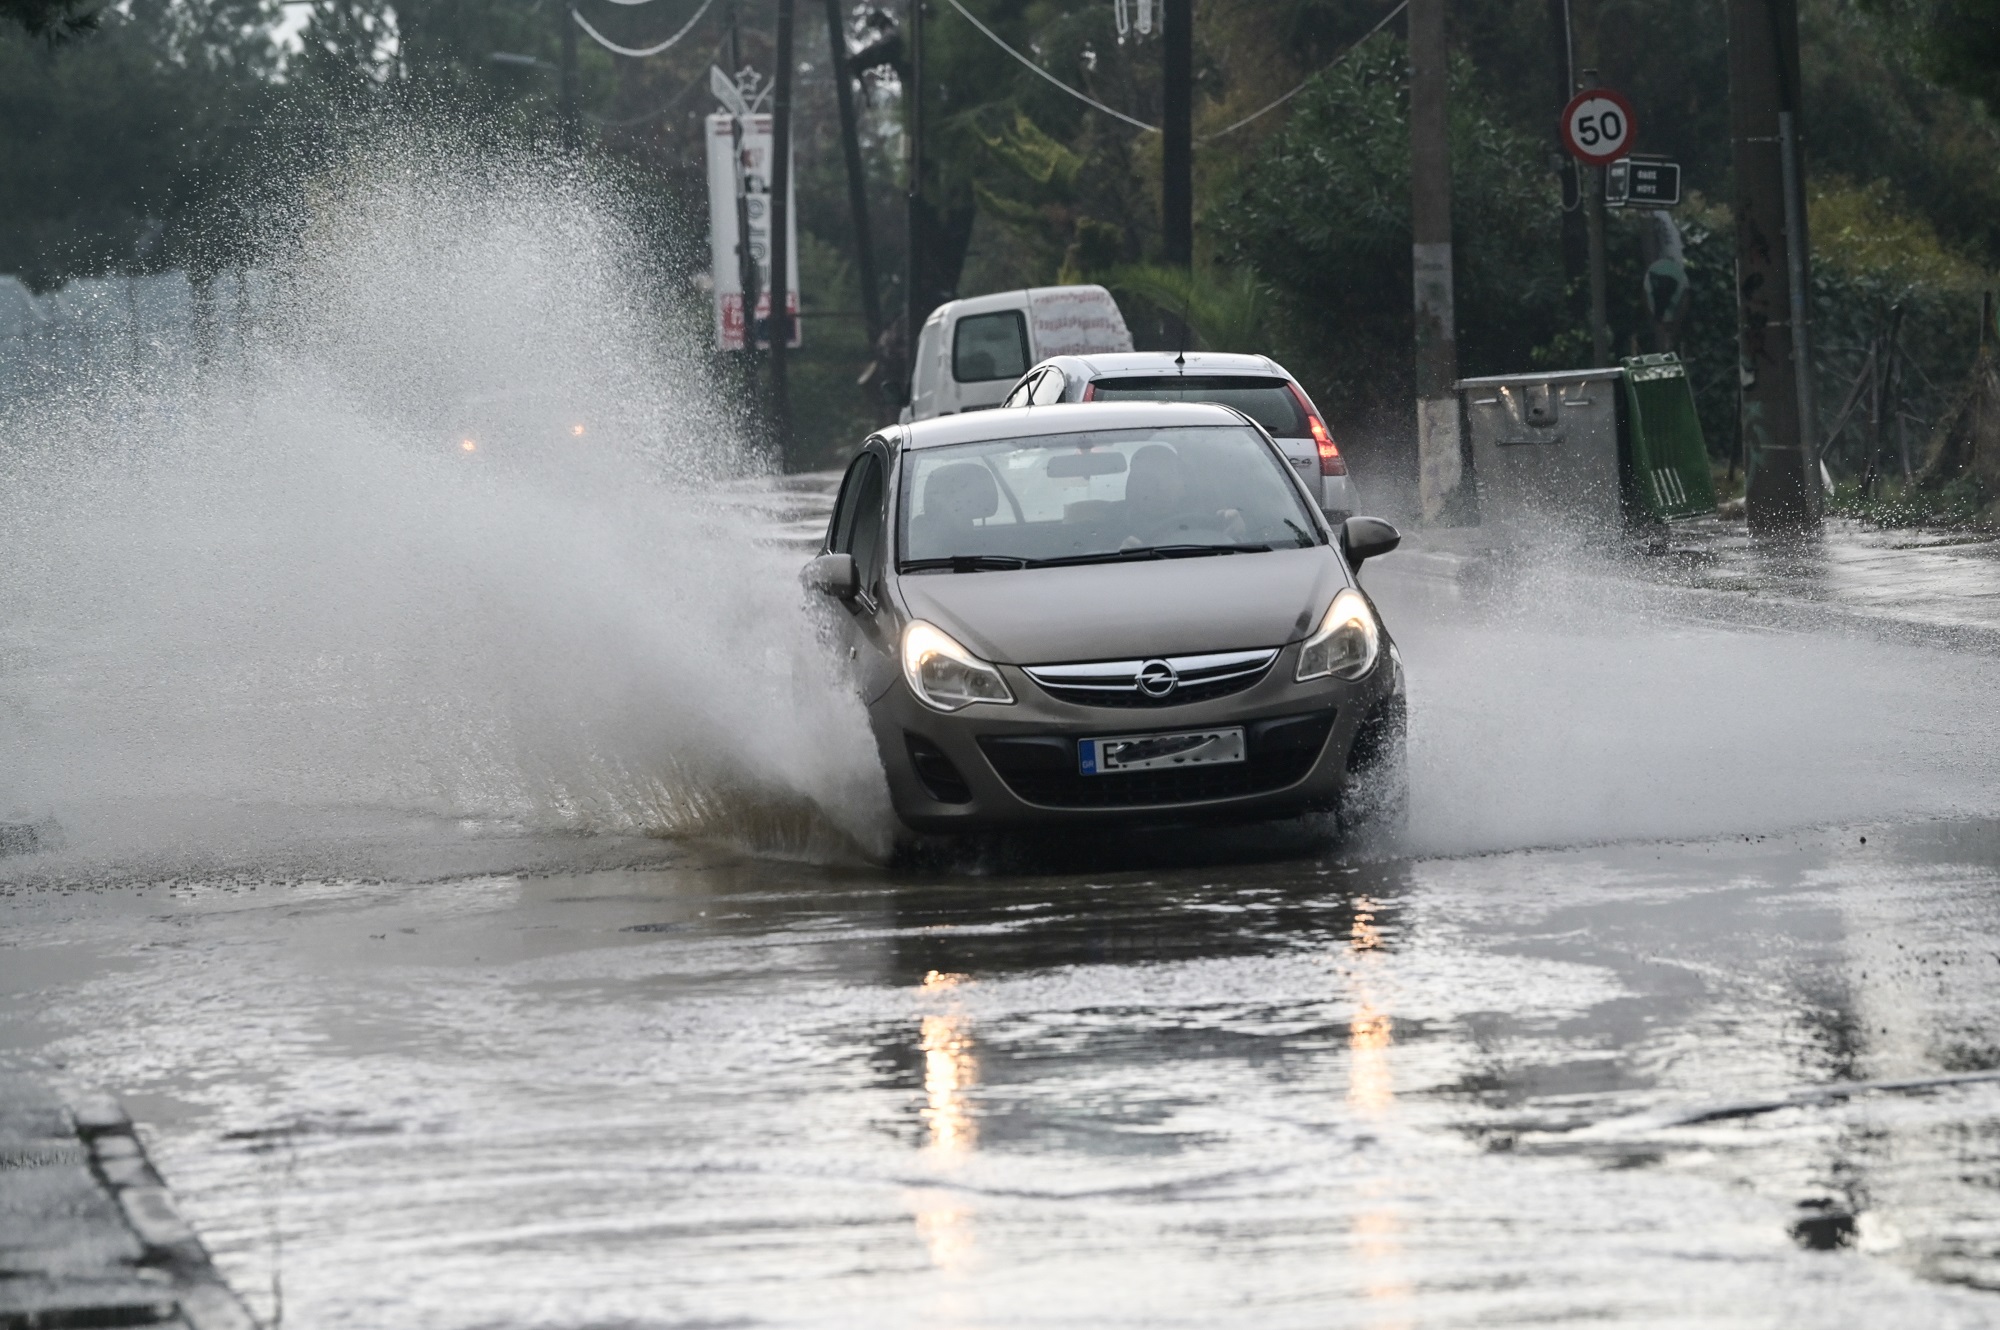 Έντονη βροχόπτωση με χαλάζι στην Κέρκυρα – Απεγκλωβισμός 10 ανθρώπων στο Πόρτο Τιμόνι